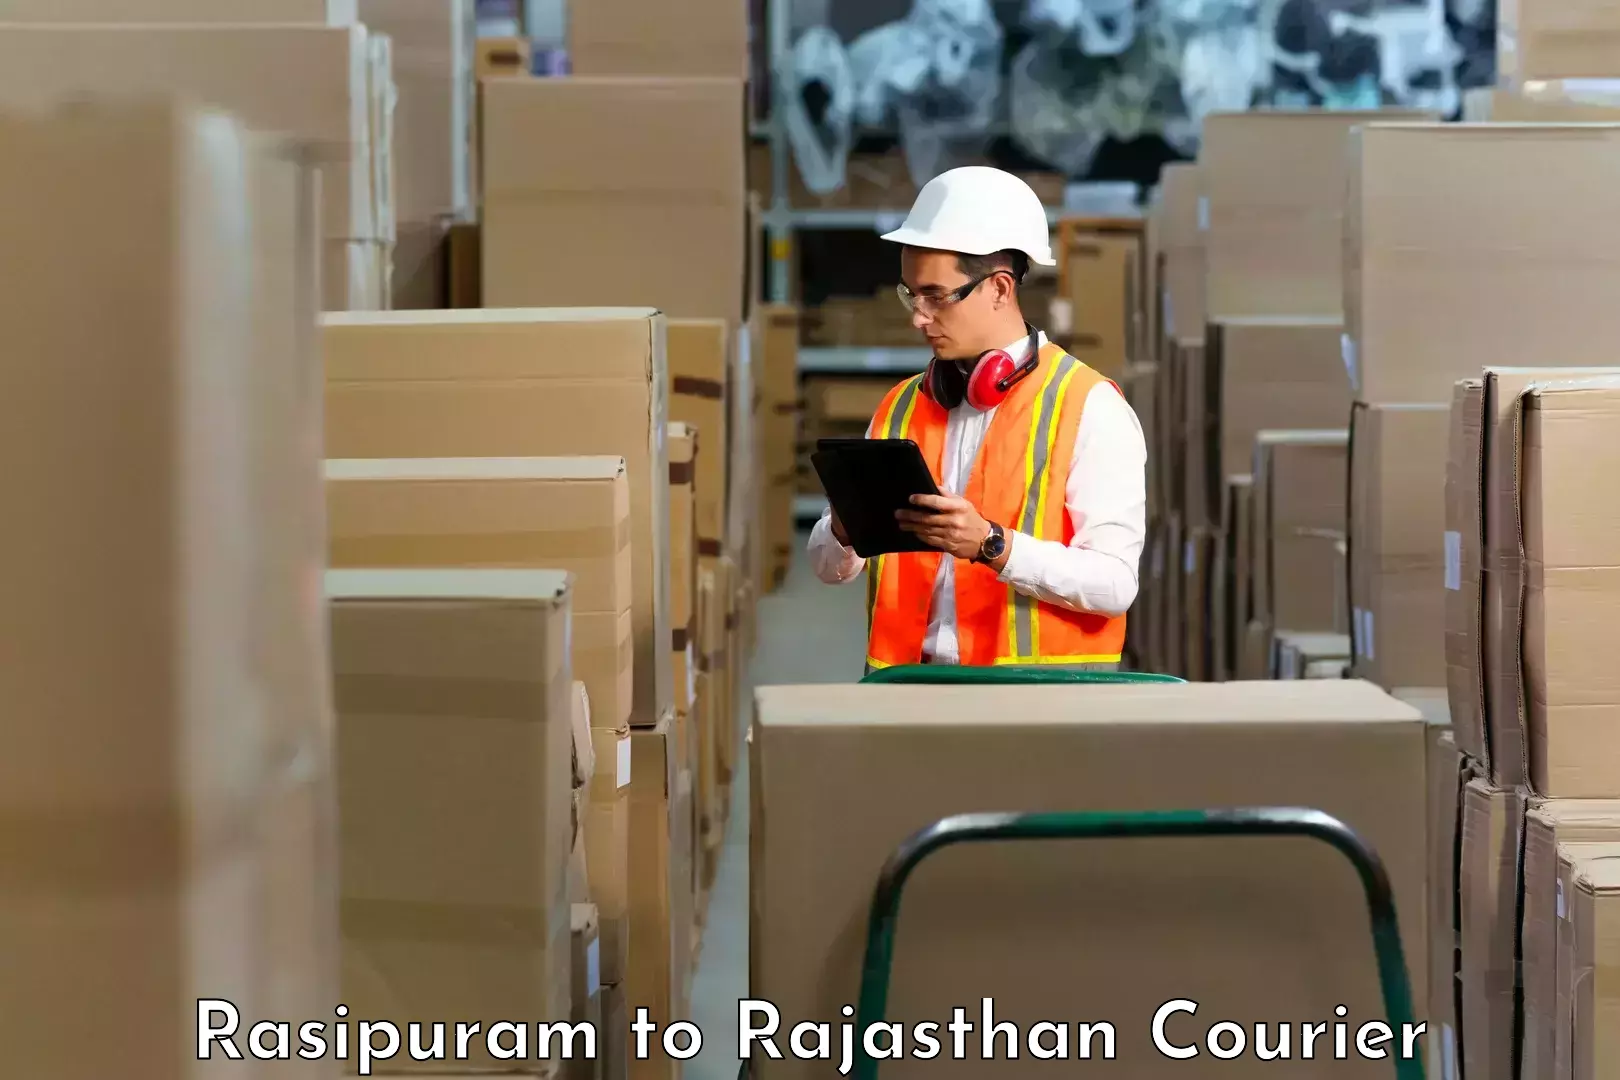 Easy return solutions Rasipuram to Rajasthan